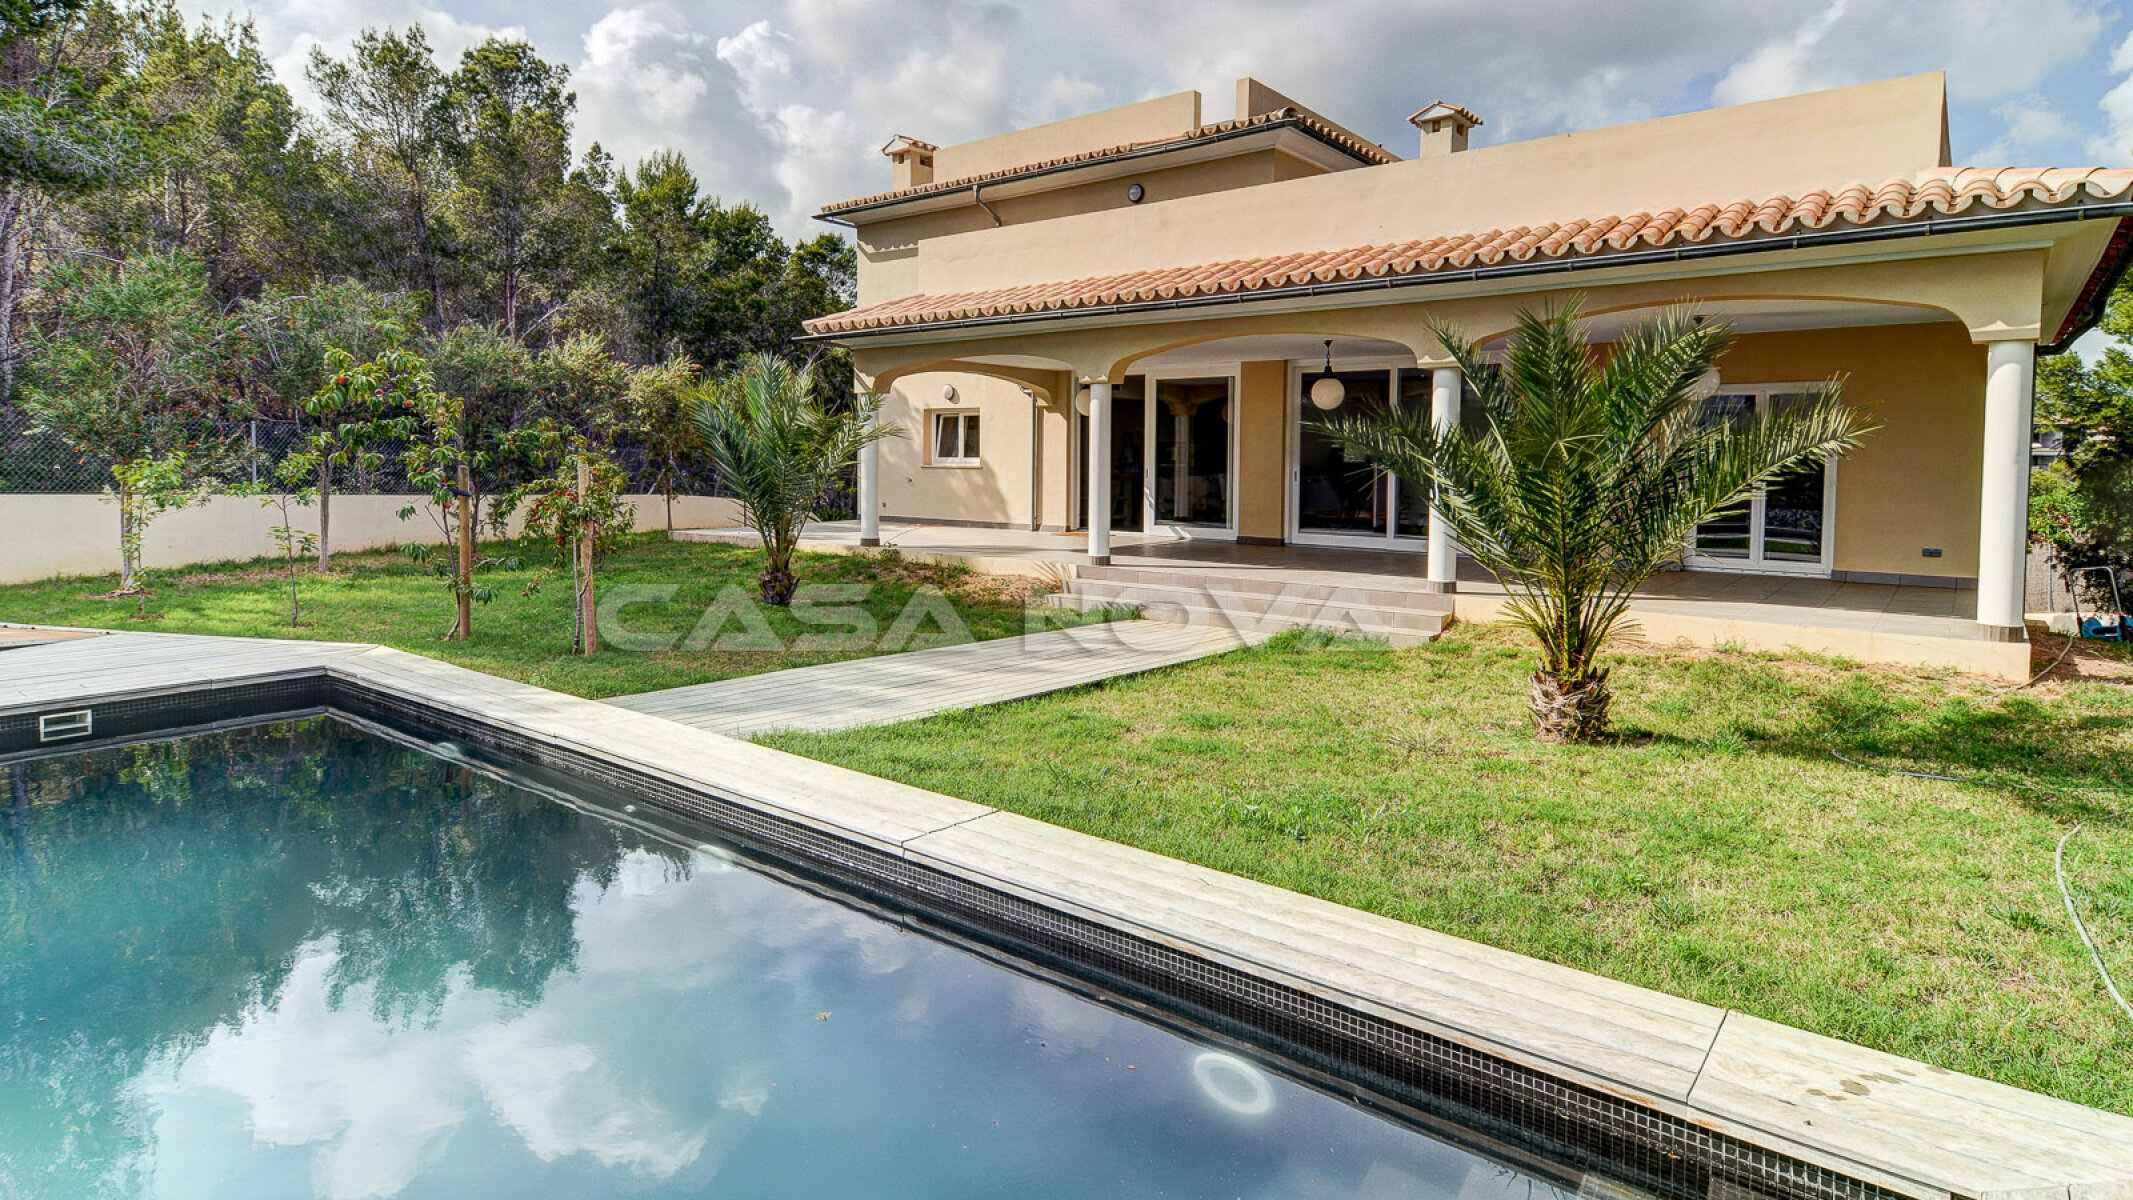 Fant�stico y muy bien cuidado jard�n con piscina de la Villa Mallorca